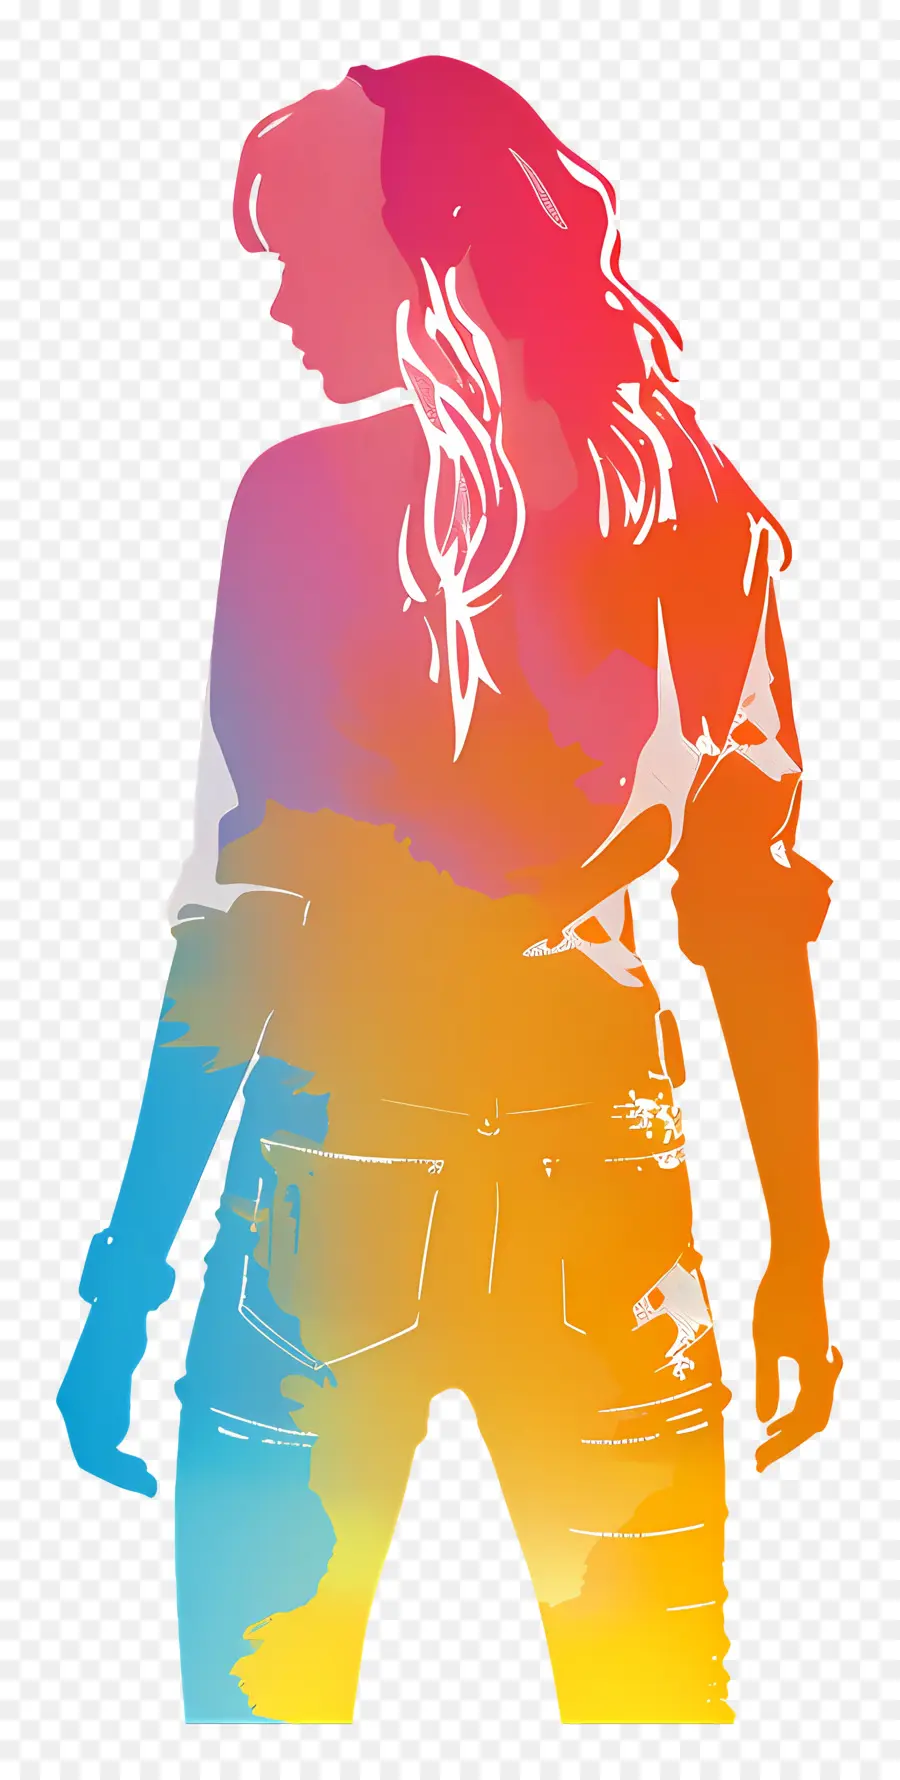 Decal Taylor Swift Silhouette Digital Art Woman Silhouette Colori vibranti Ritratto del profilo - Silhouette di profilo vibrante con tonalità neon